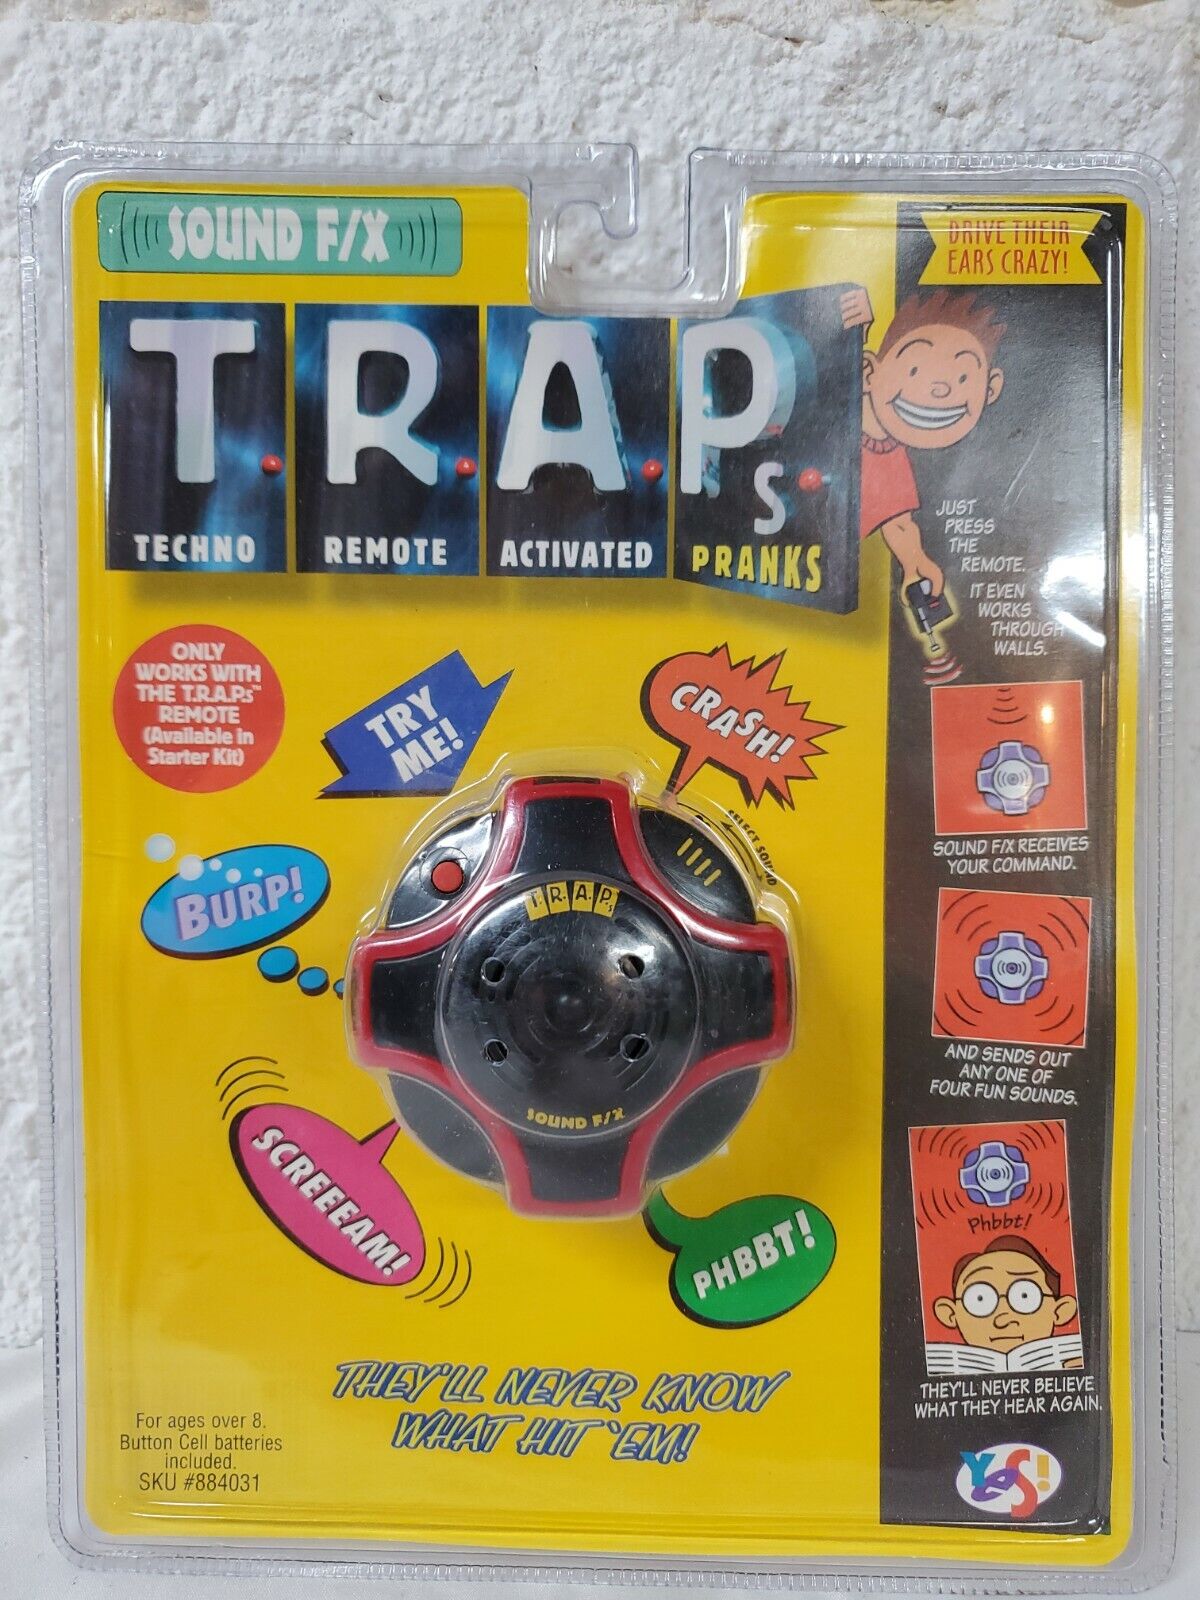 TRAPs - Techno Remote Activated Pranks -Sound F/X